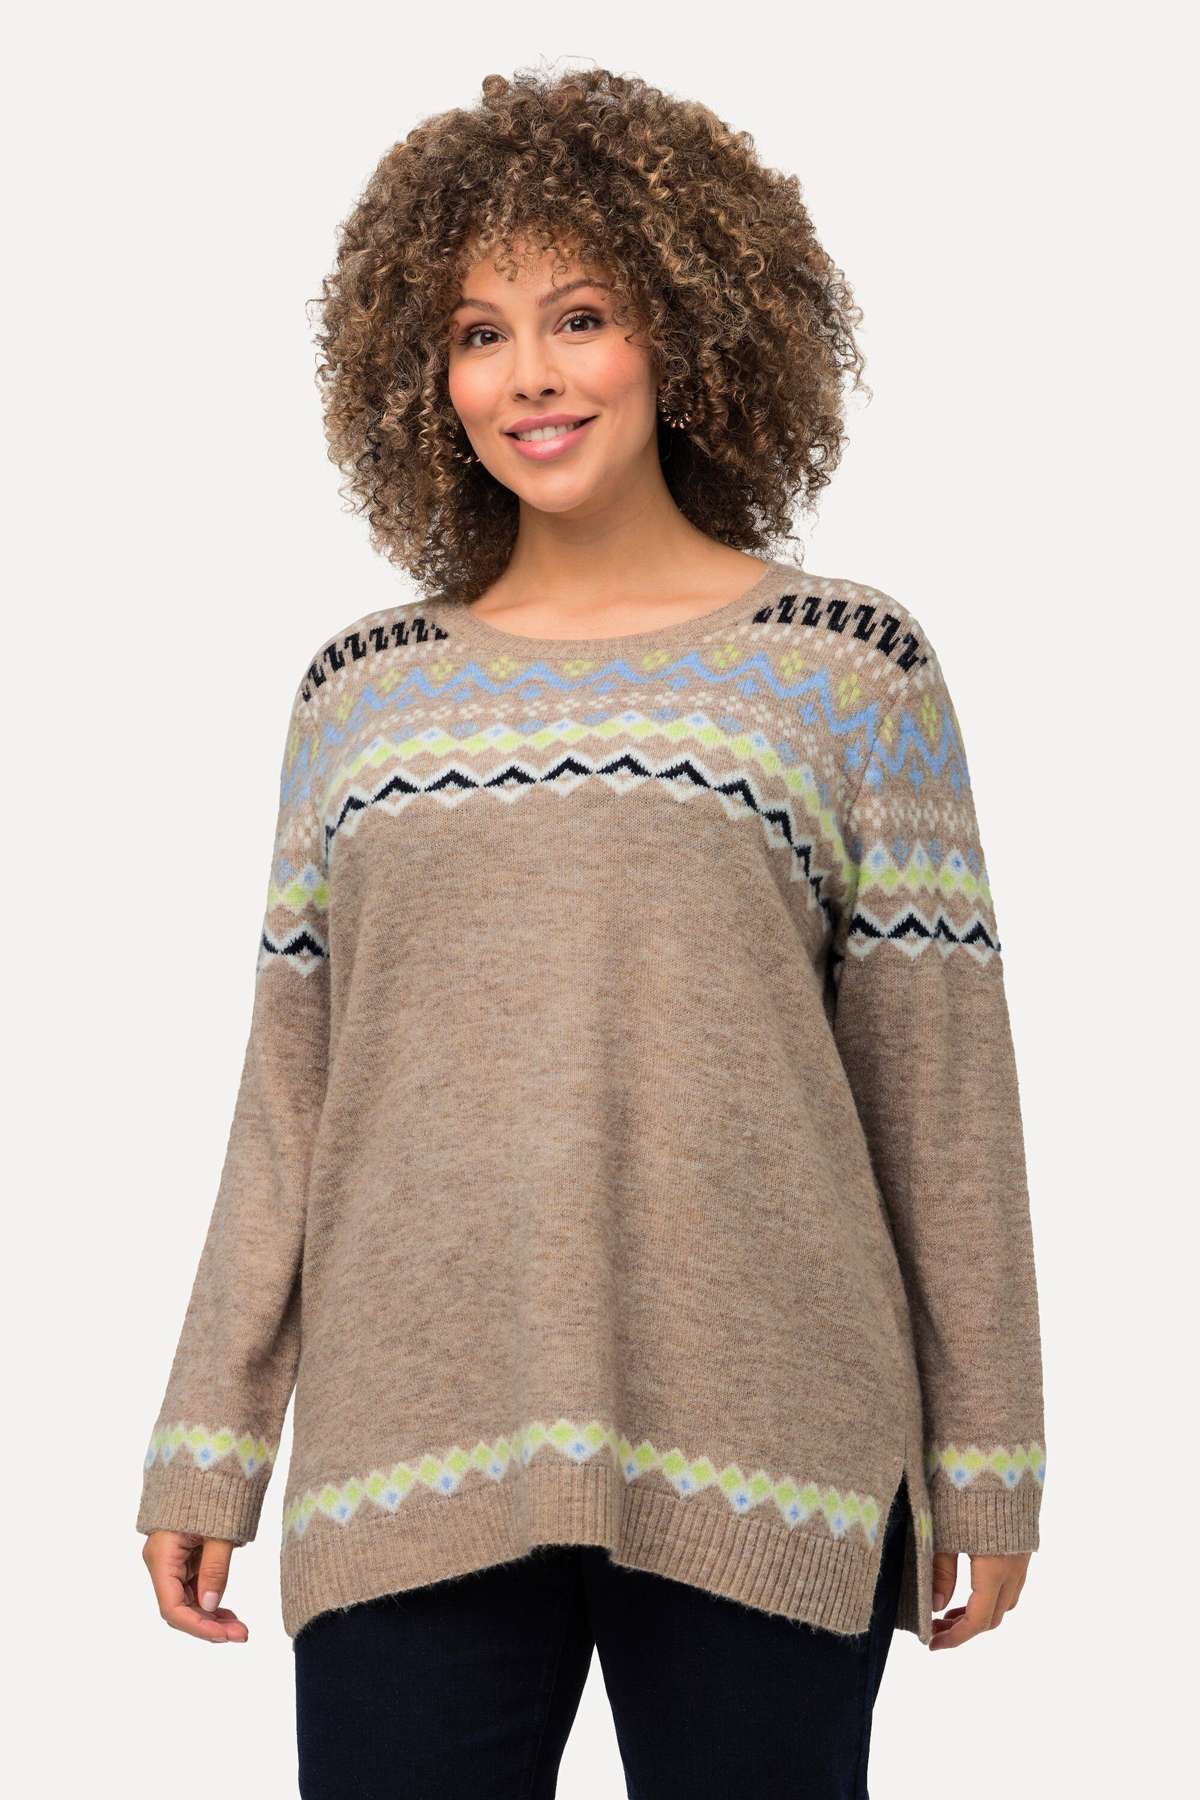 Вязаный свитер Норвежский свитер с содержанием шерсти, круглый вырез, длинный рукав.